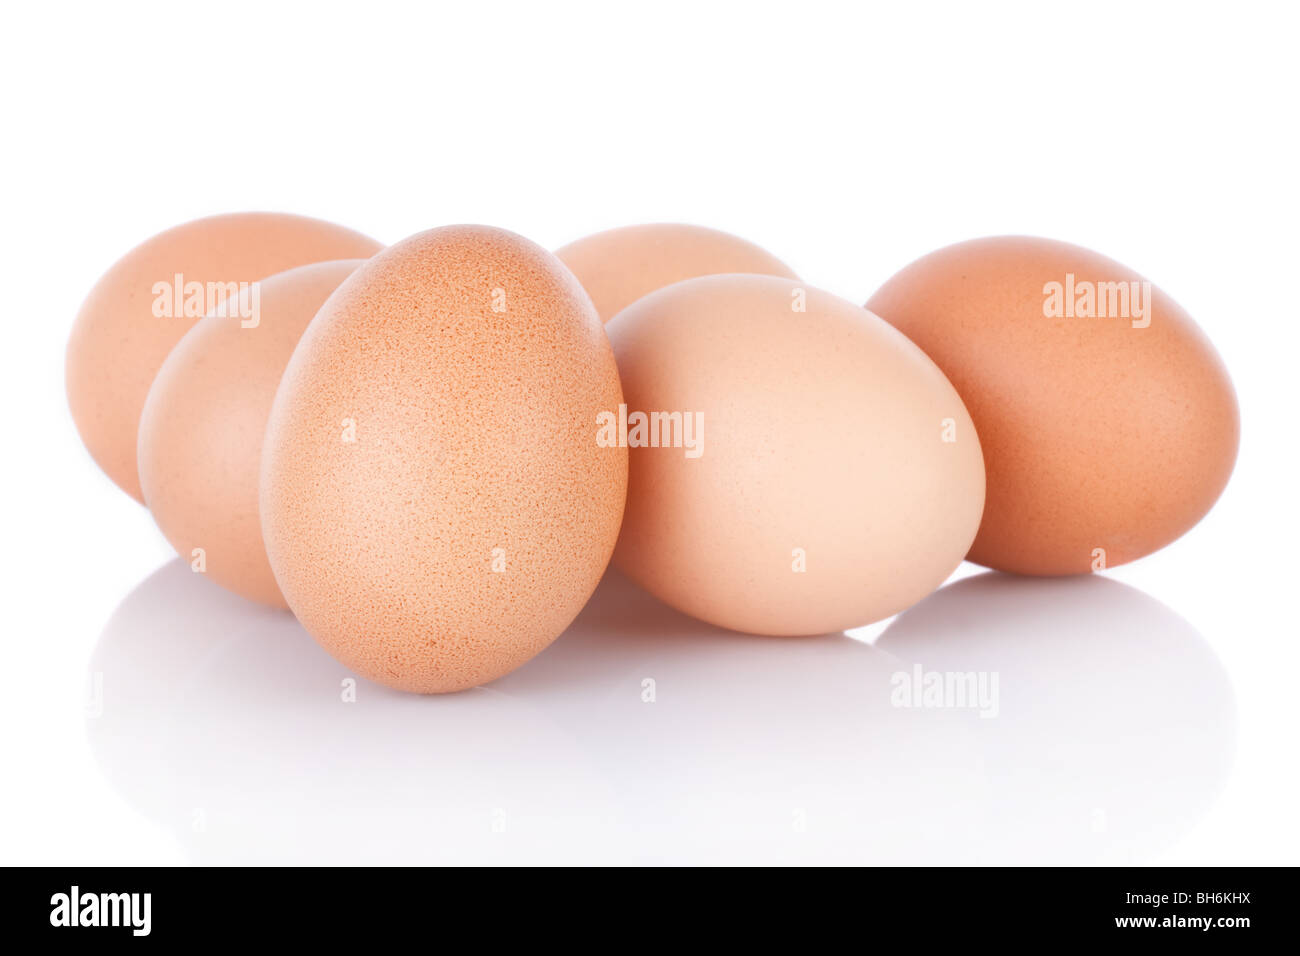 Half dozen  brown chicken eggs isolated on white background Stock Photo